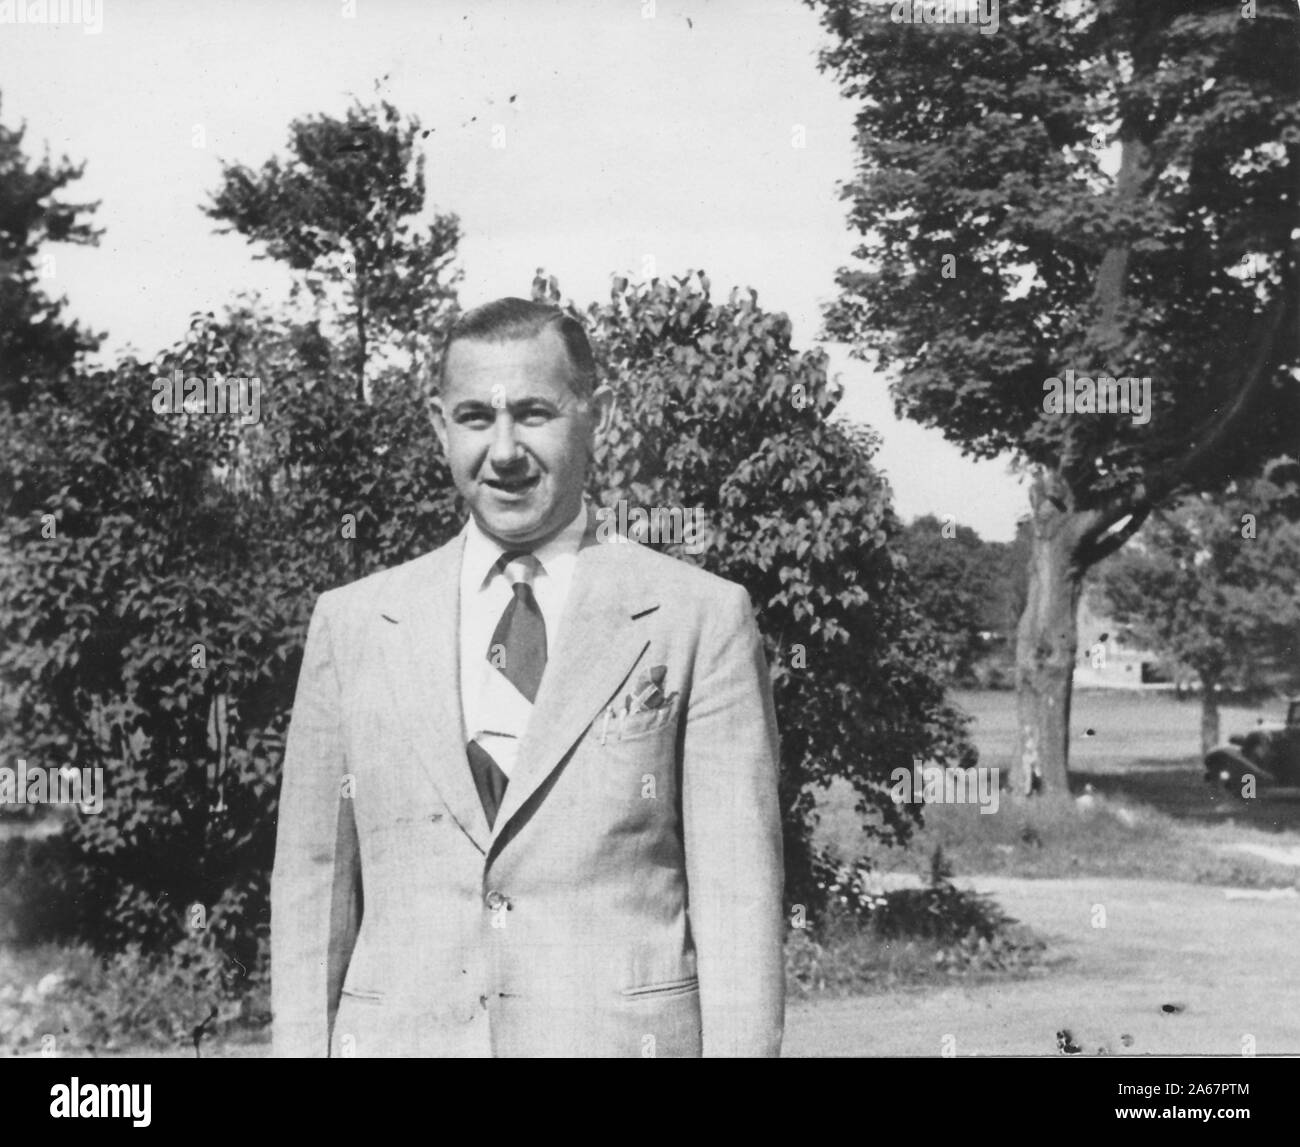 Portrait mi-long d'un homme juif-américain portant un costume et une cravate et debout à l'extérieur à New York City, New York, 1940. () Banque D'Images